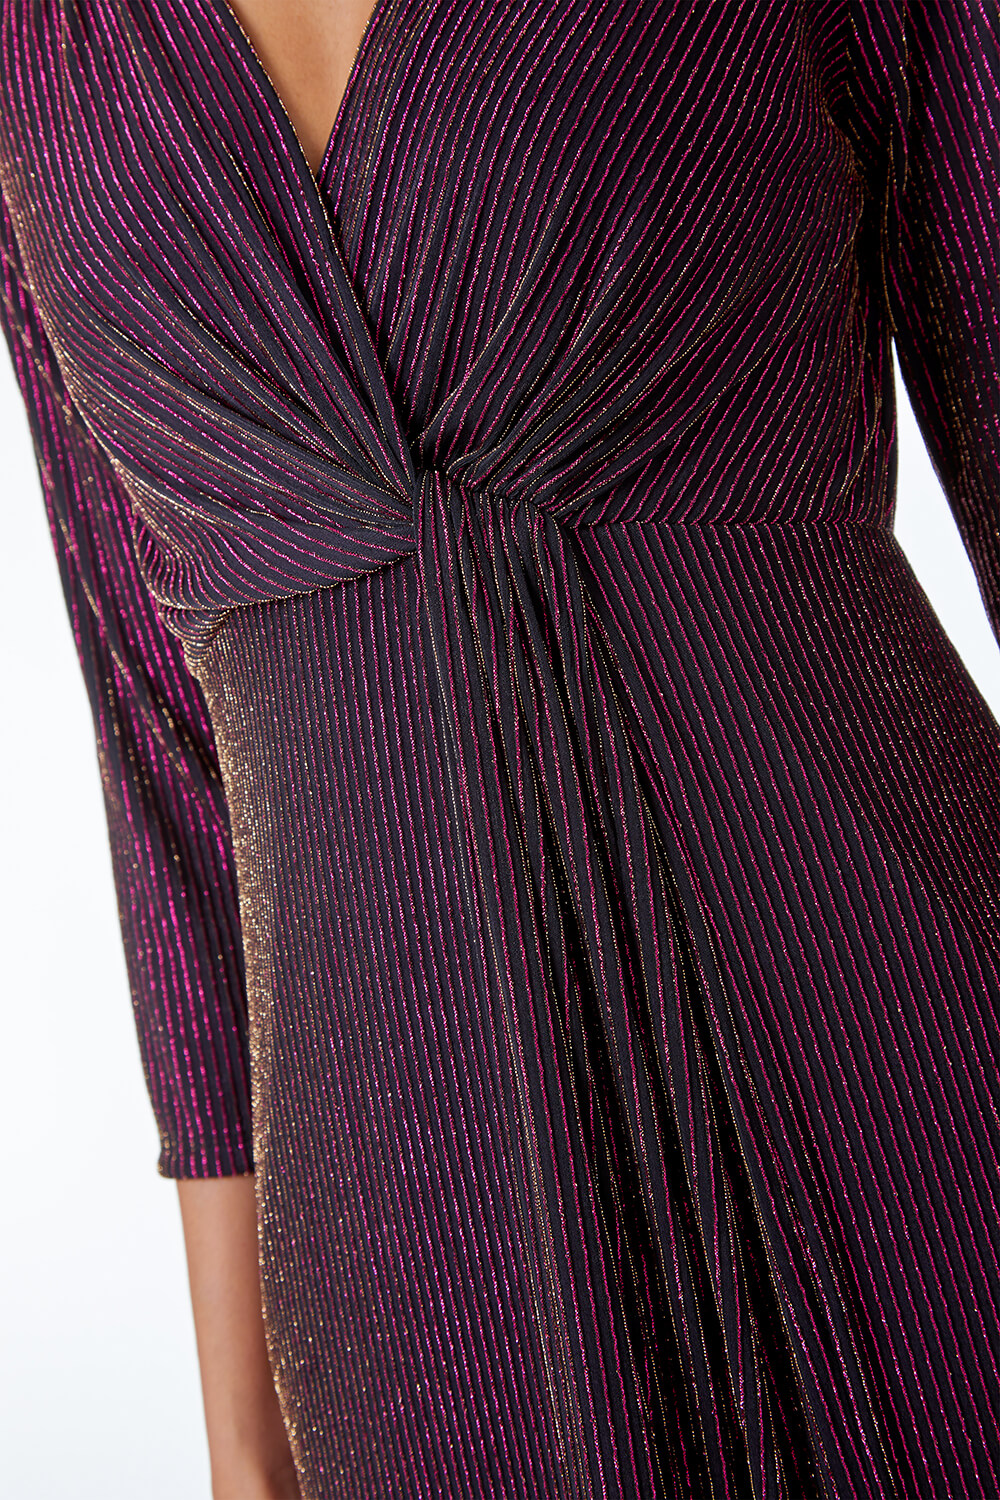 MAGENTA Shimmer Stripe Twist Front Ruched Dress, Image 5 of 5